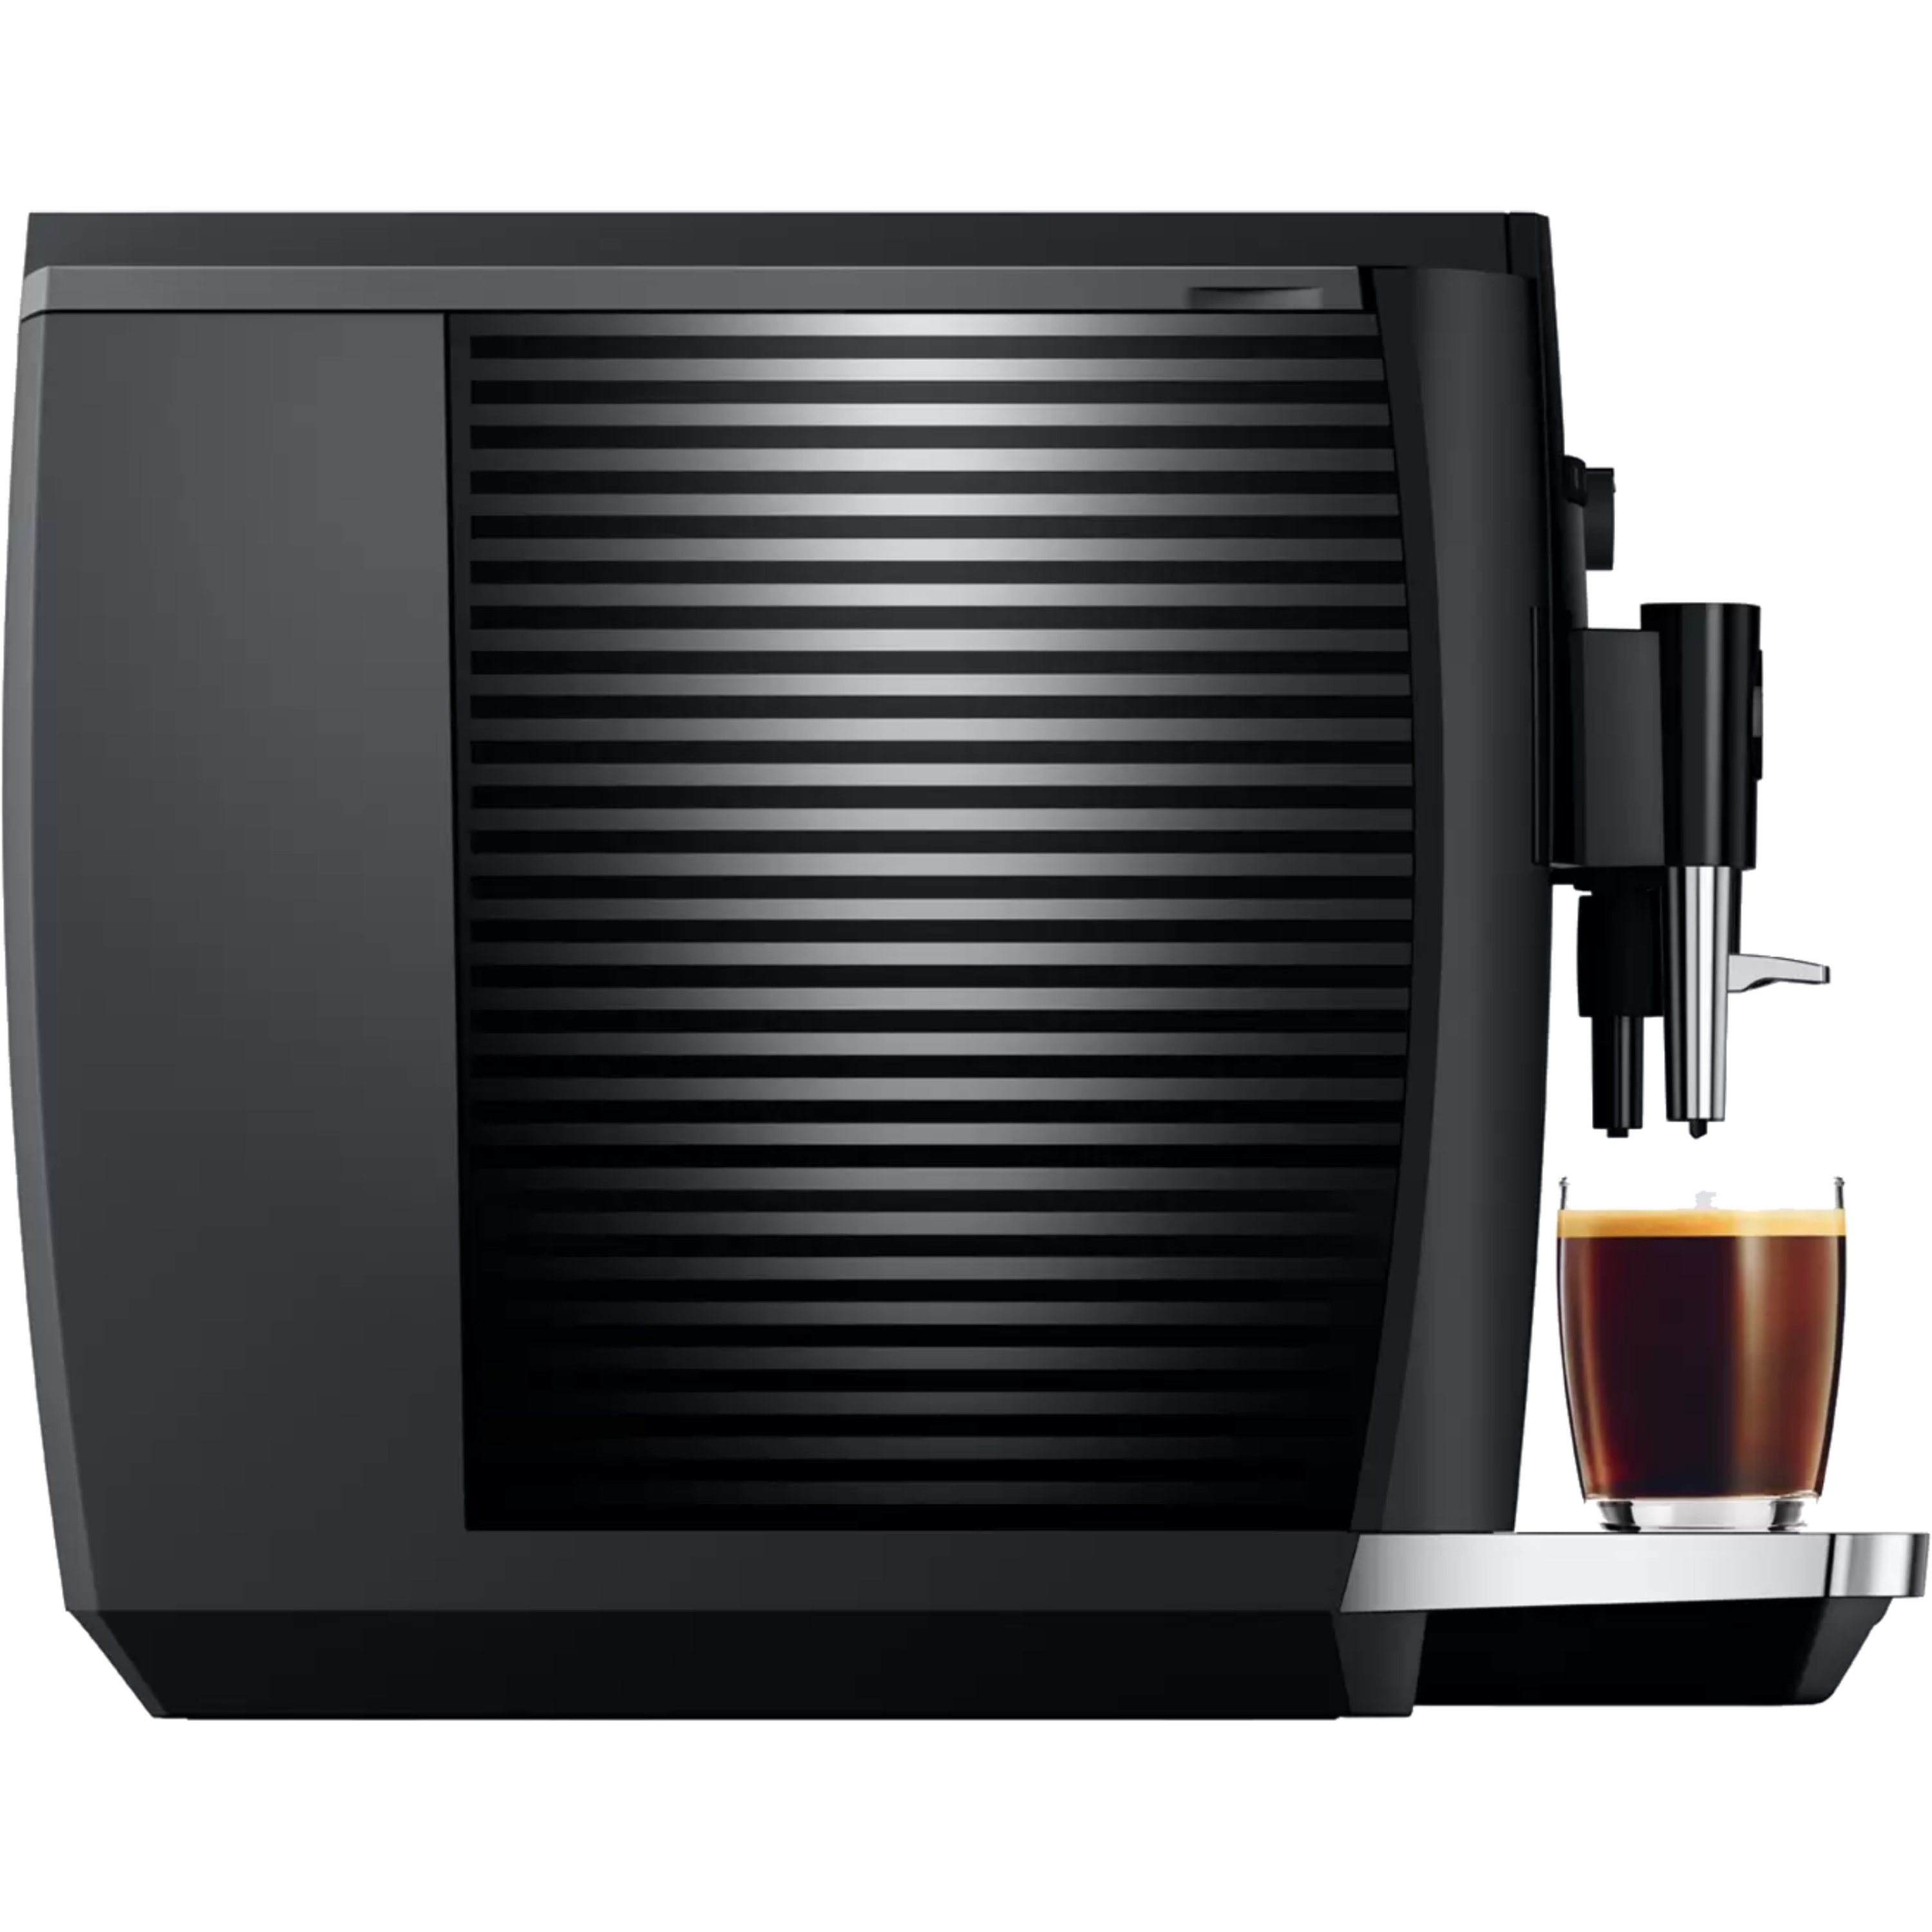 מכונת פולי קפה מדגם Jura E4 - צבע שחור אחריות לשנתיים ע